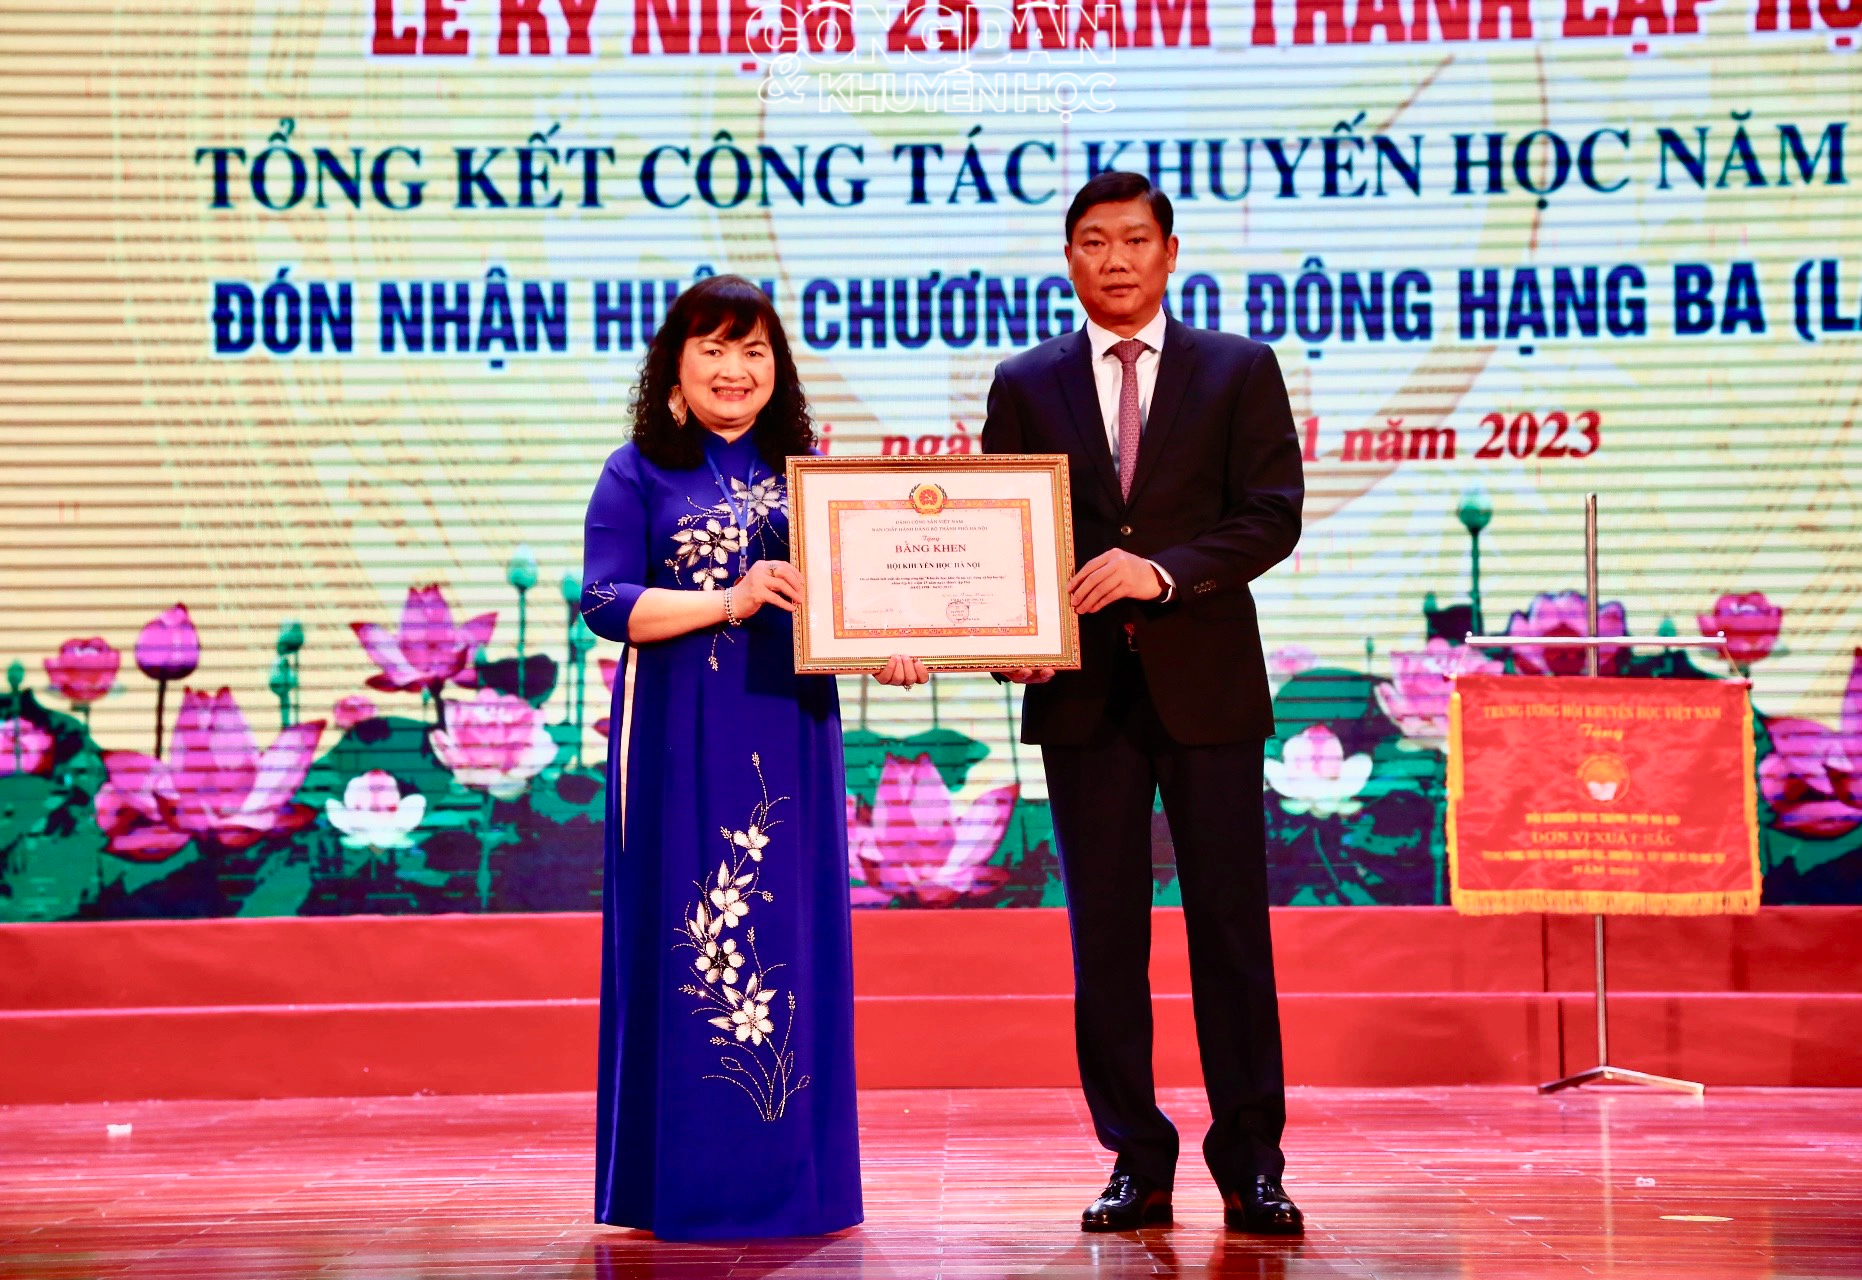 Hội Khuyến học Hà Nội nhận Huân chương Lao động hạng Ba (lần 2) - Ảnh 9.